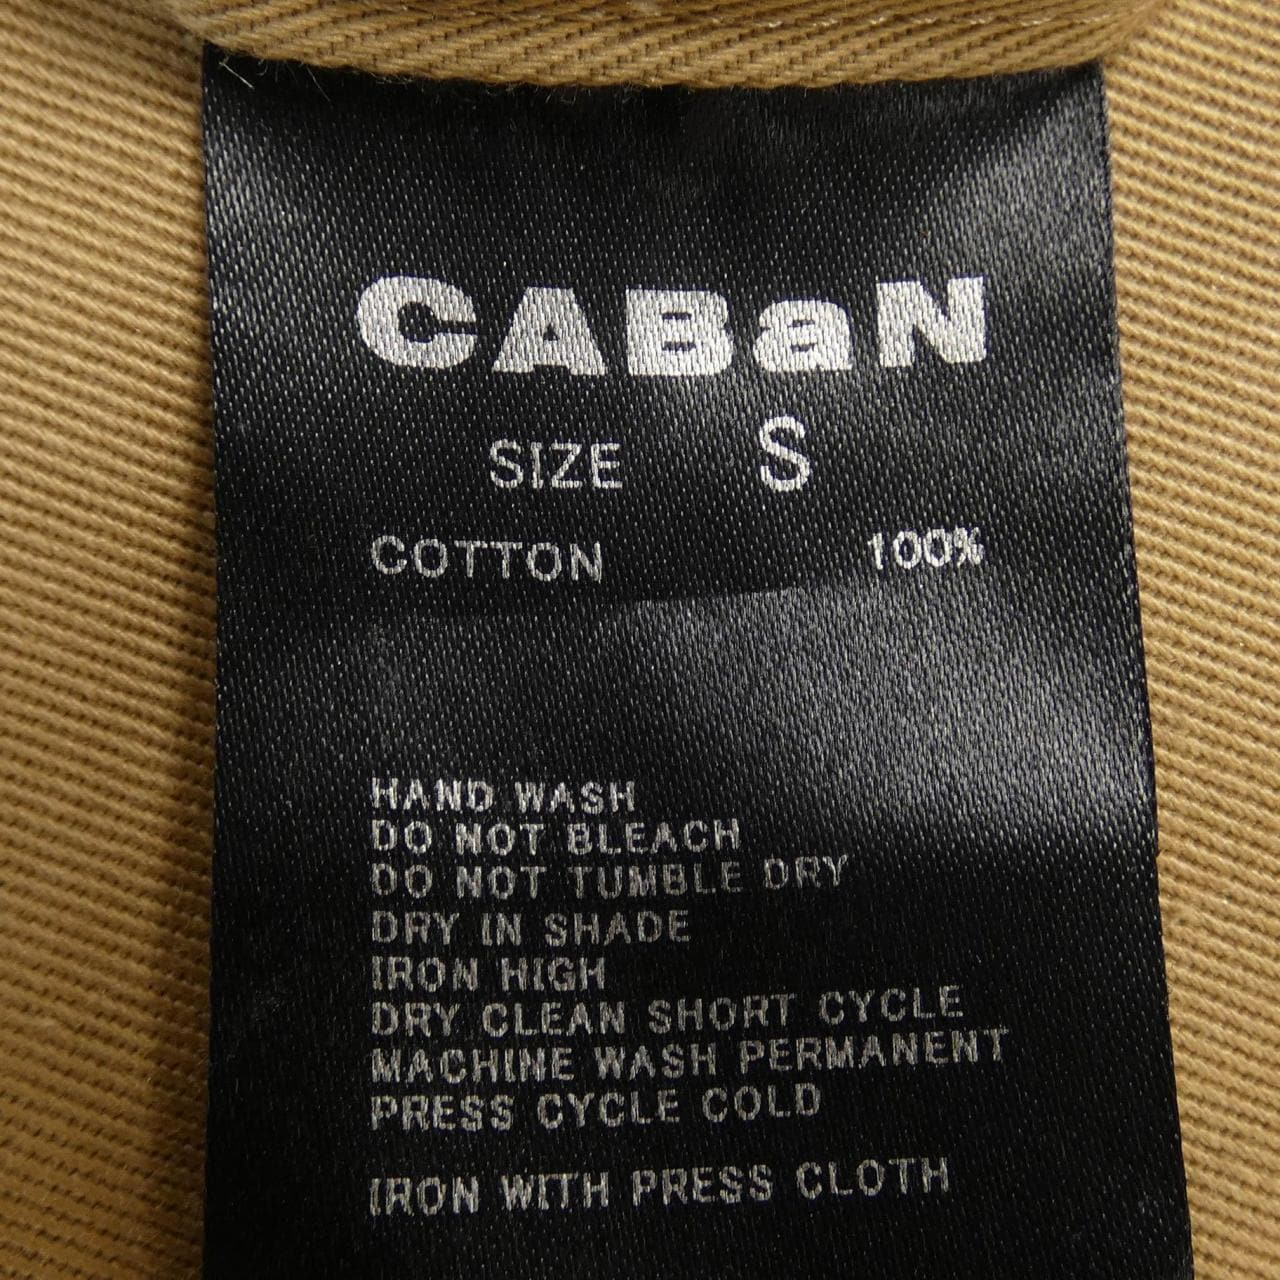 CABaN pants